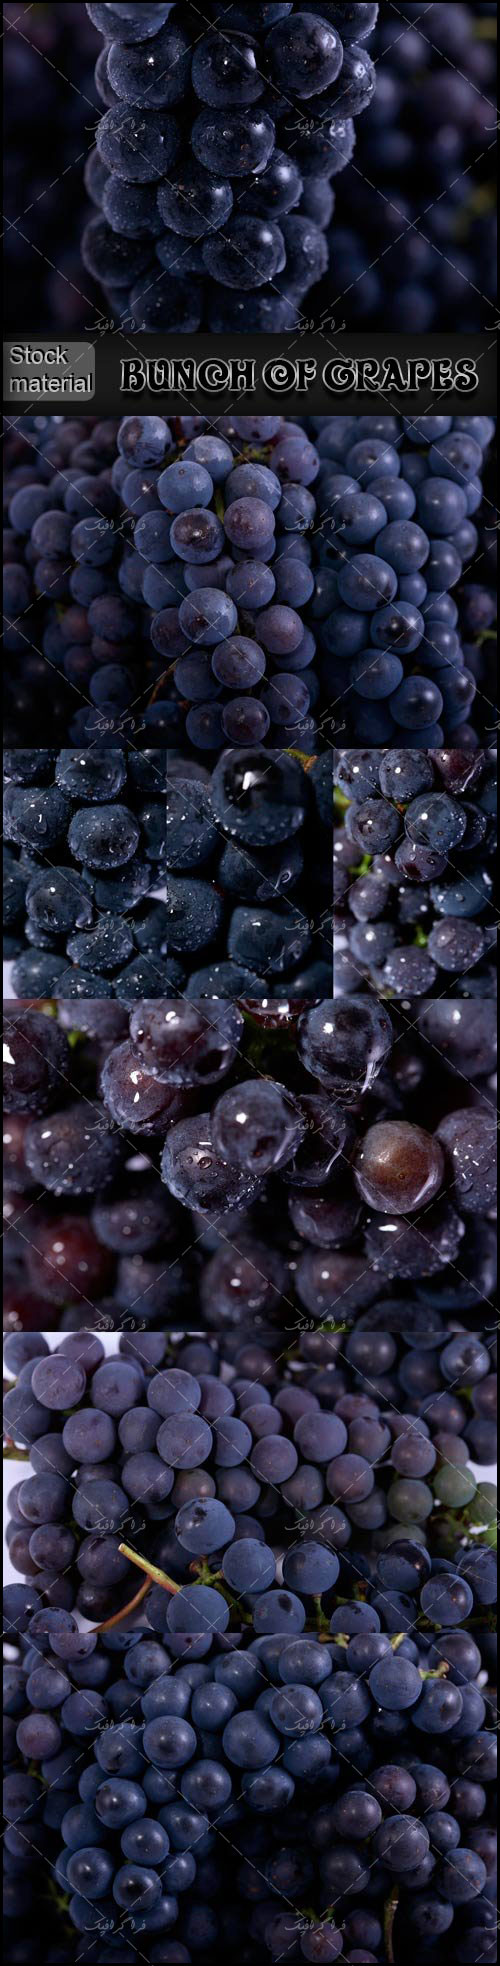 دانلود تصاویر استوک انگور با قطرات آب